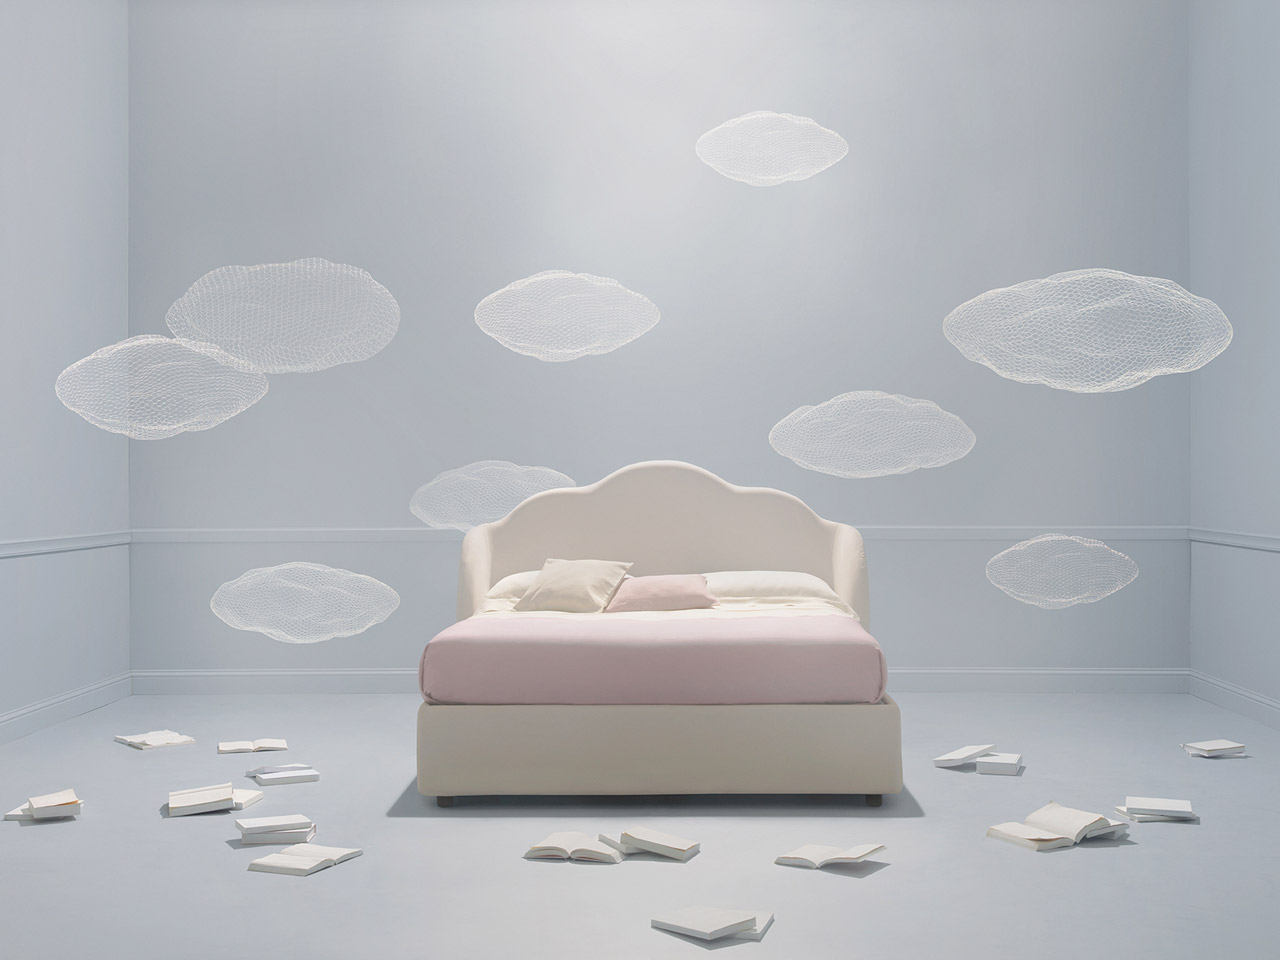 Un letto di design che fa sognare da svegli lifeblogger for Sognare asciugamani